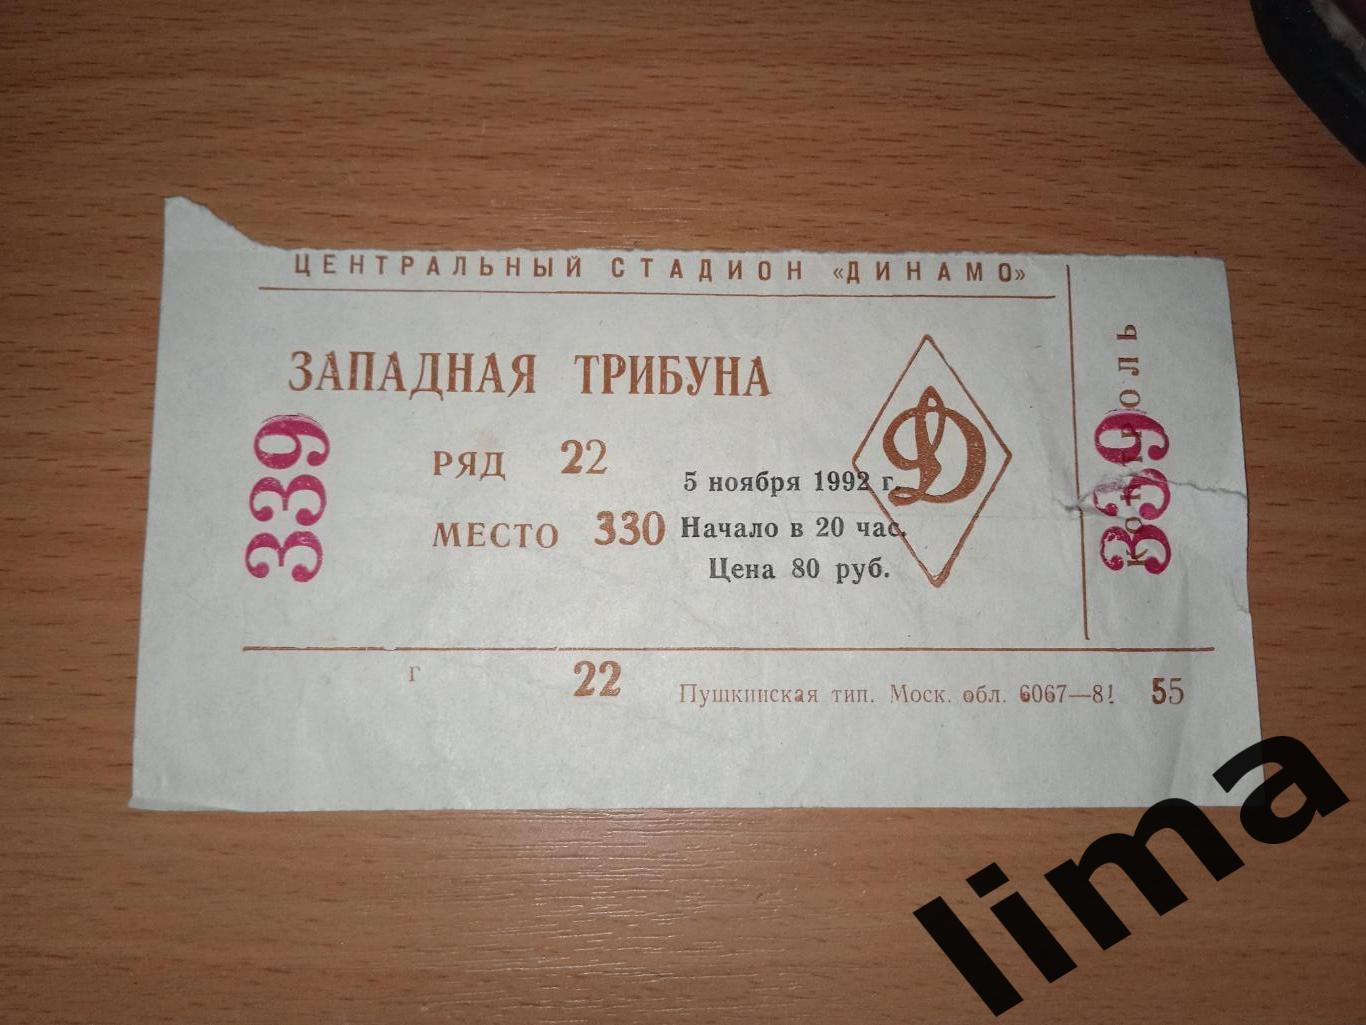 Билет Динамо Москва - Торино Италия 5 ноября 1992